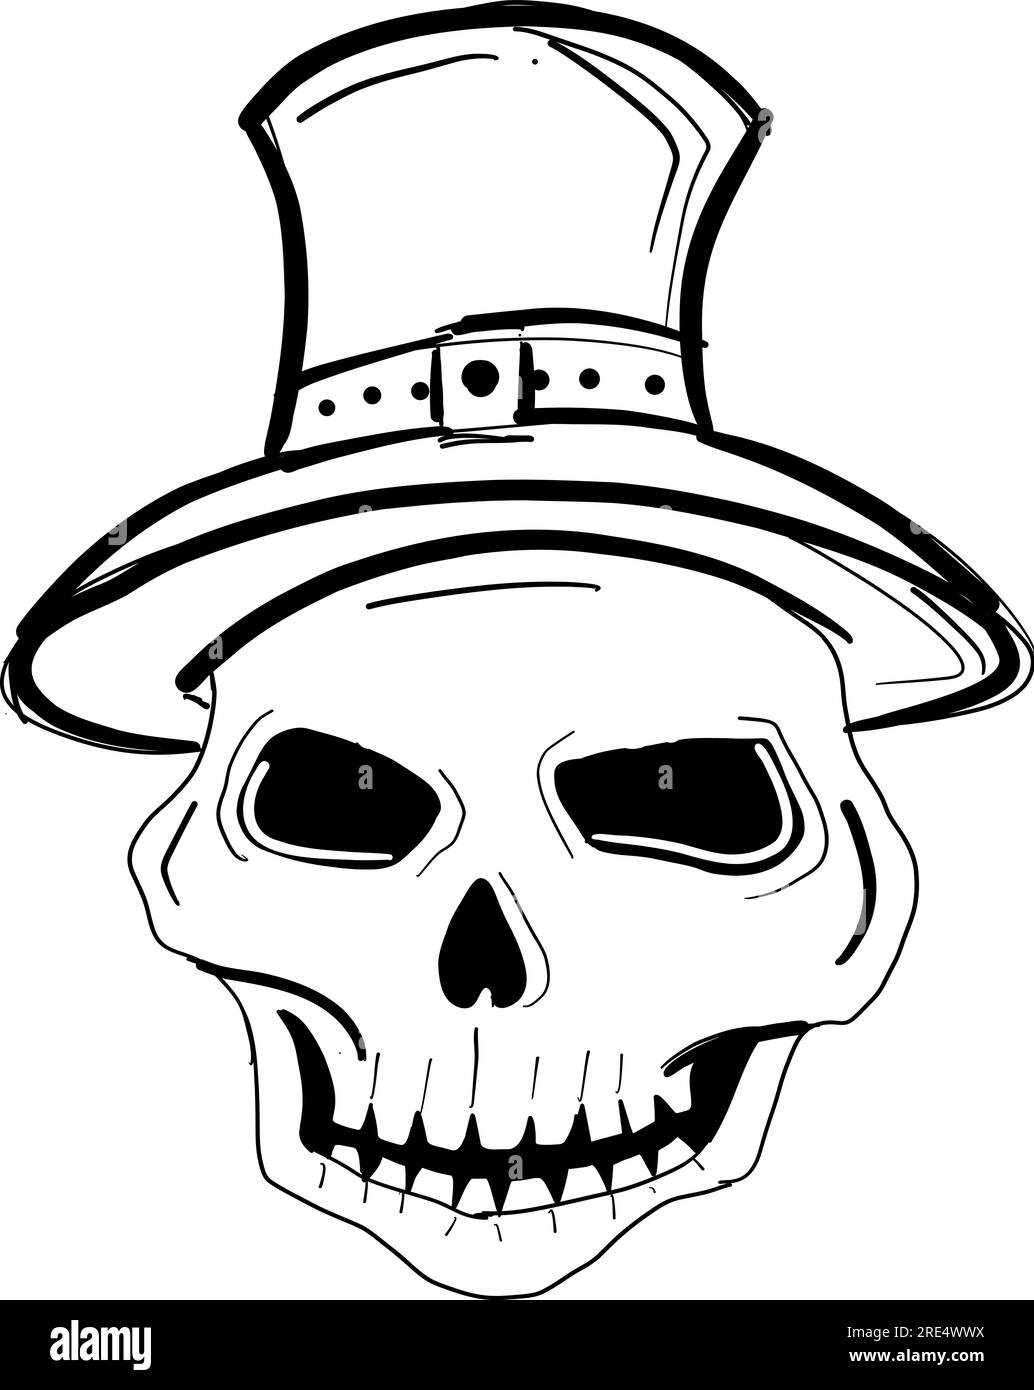 Crâne fantôme portant un chapeau de sorcière a dessiné des lignes à la main sur un fond blanc, isolez Illustration de Vecteur